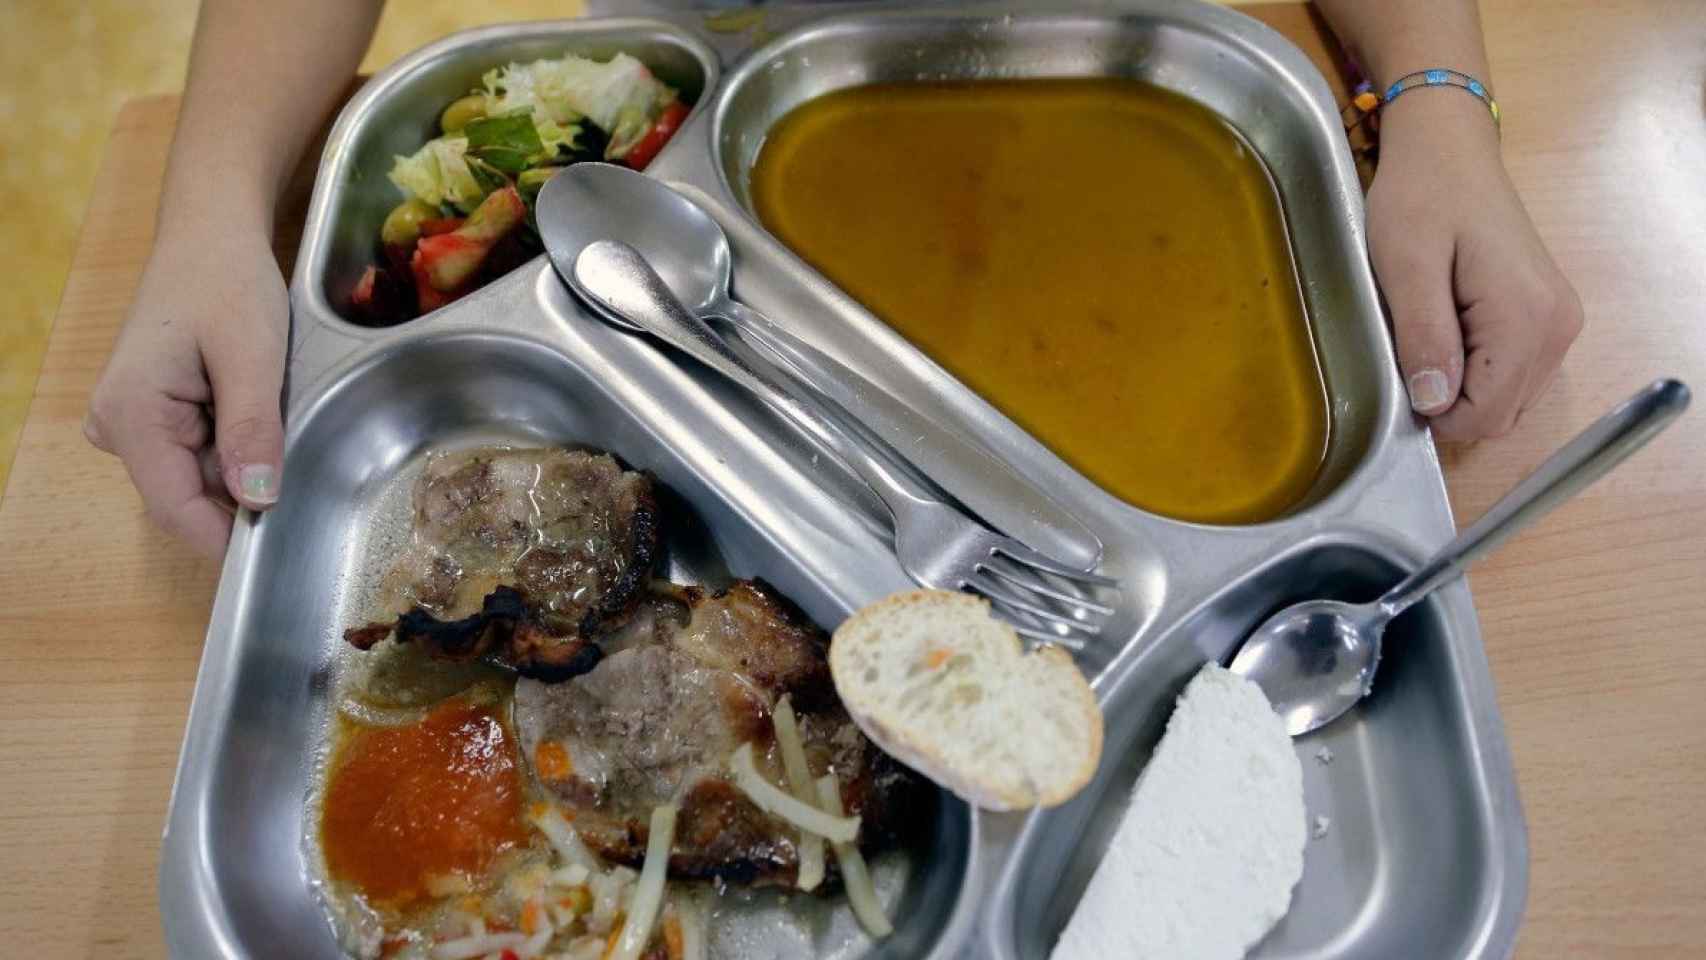 Ración de una comida en un comedor escolar.